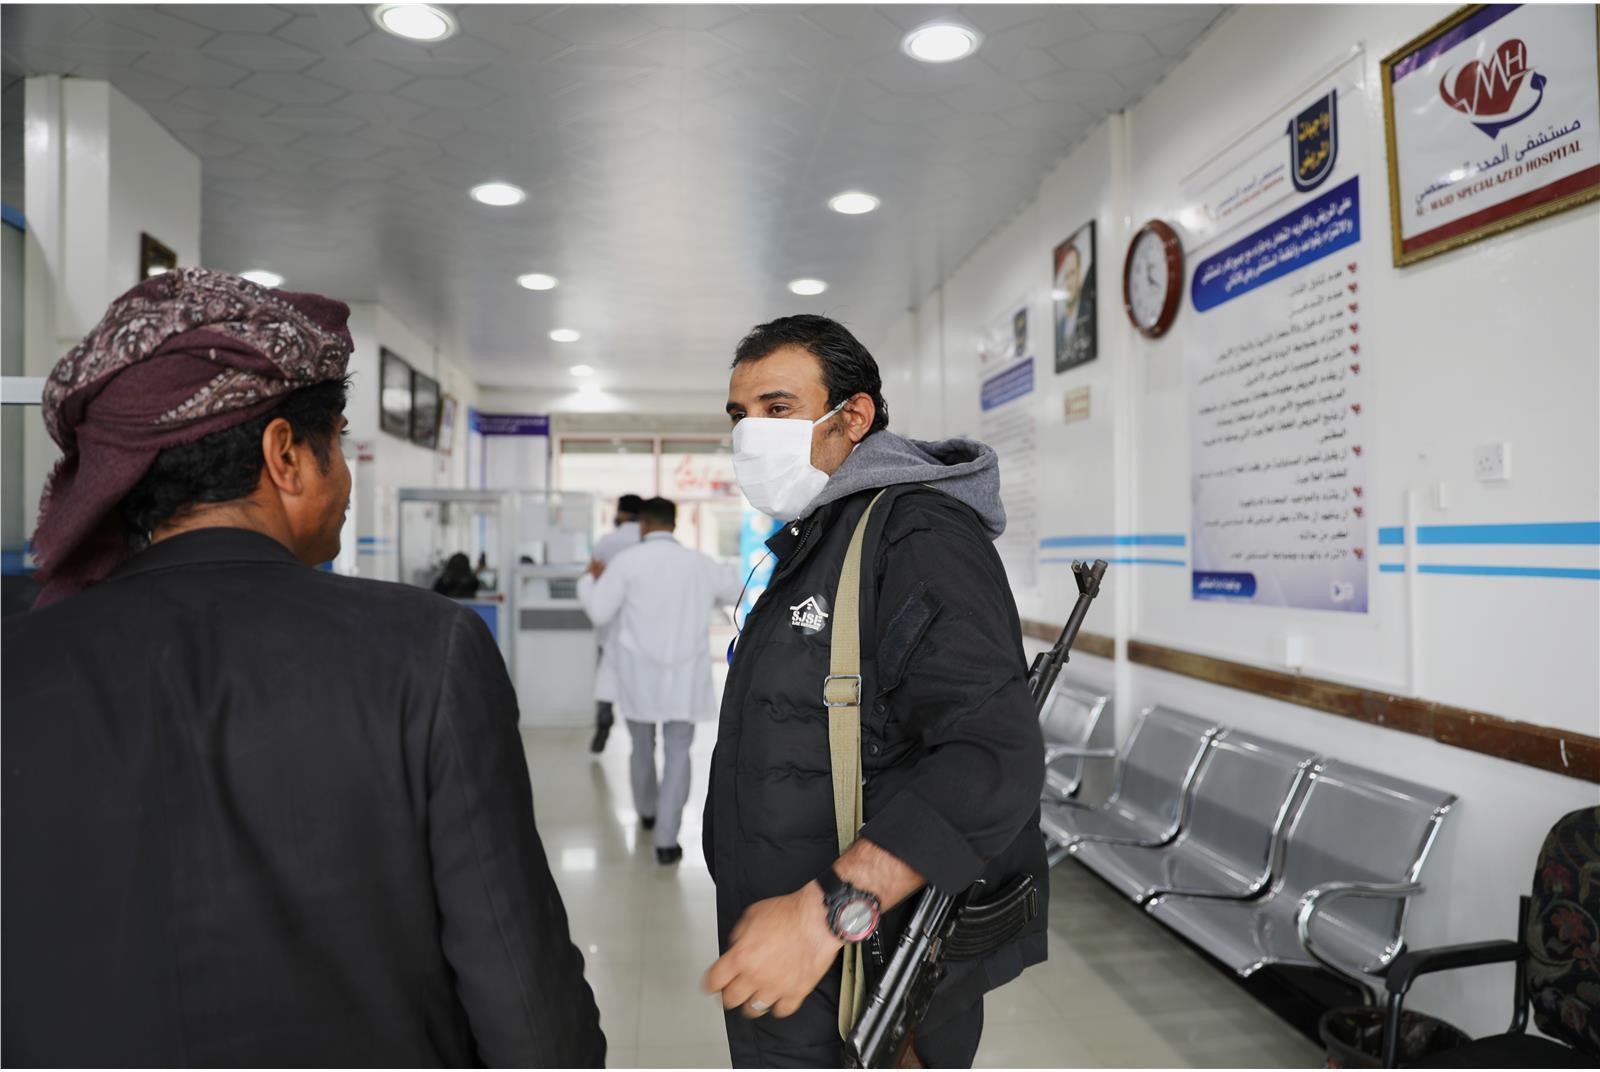 الحكومة تسلم "الصحة العالمية" 10 آلاف جرعة من لقاح كورونا لتطعيم الكوادر الطبية في مناطق سيطرة الحوثيين